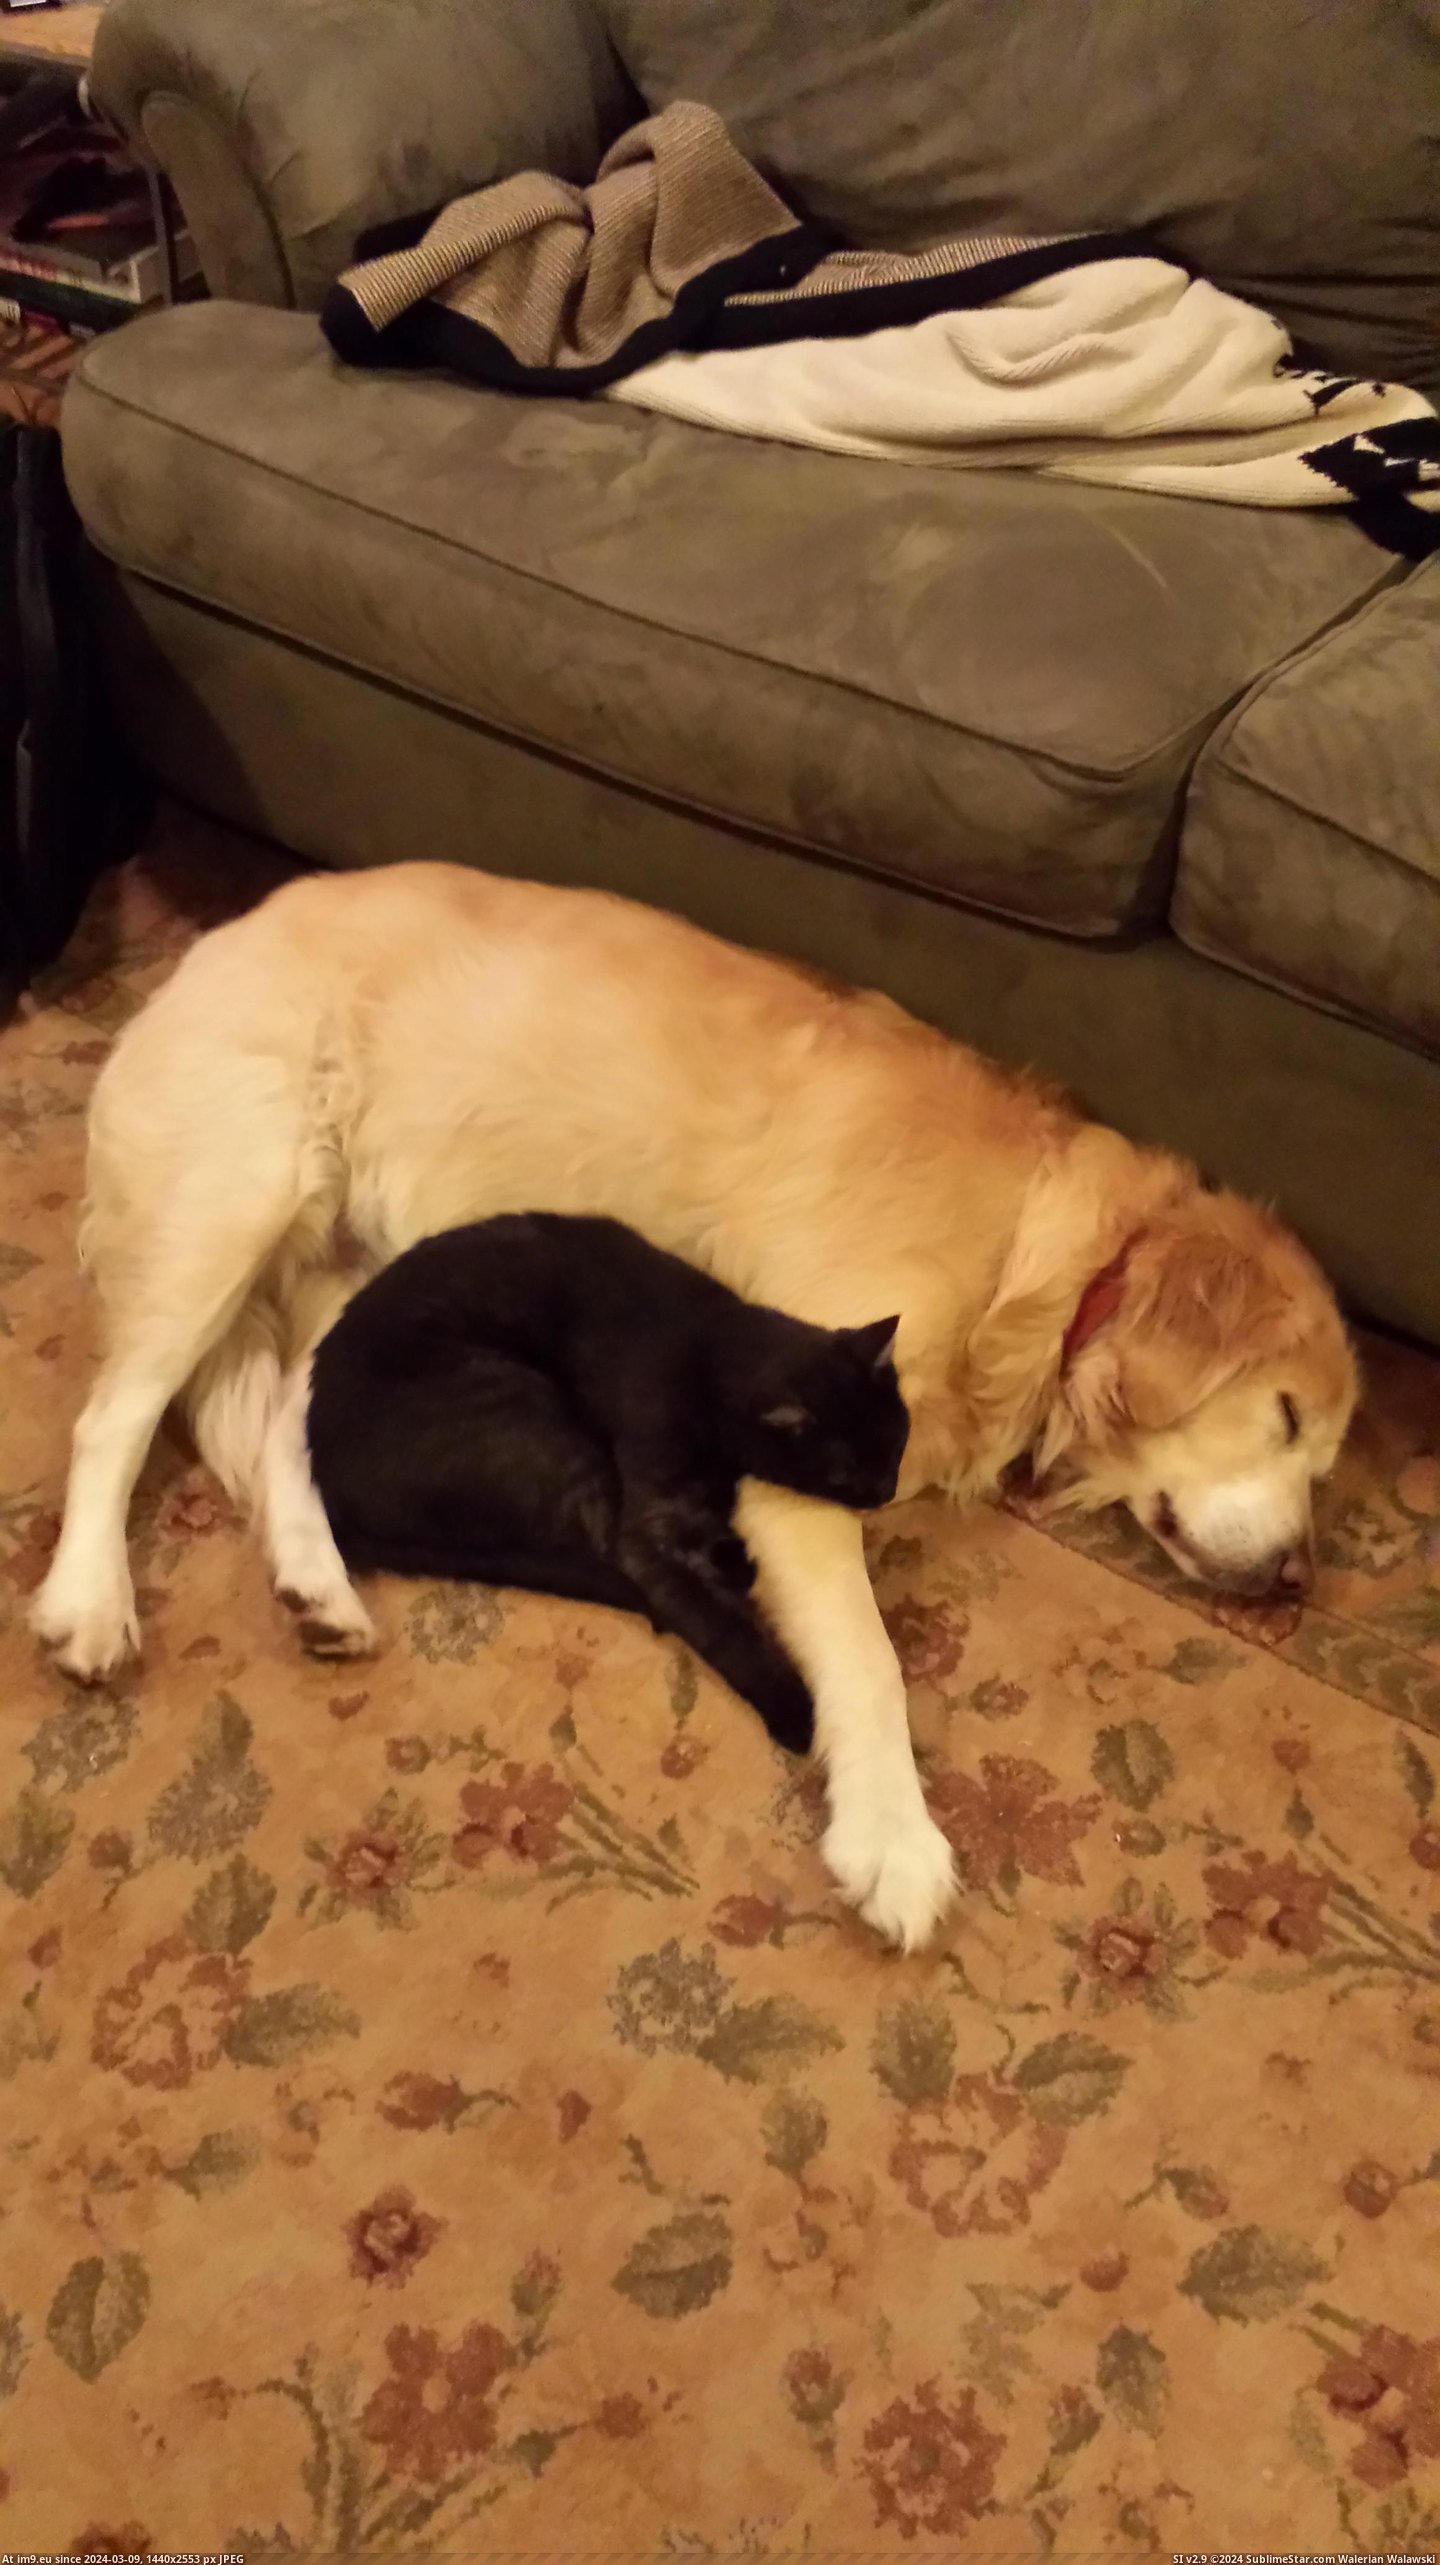 #Cat #Sleep #Dog [Aww] My dog and cat sleep together Pic. (Obraz z album My r/AWW favs))